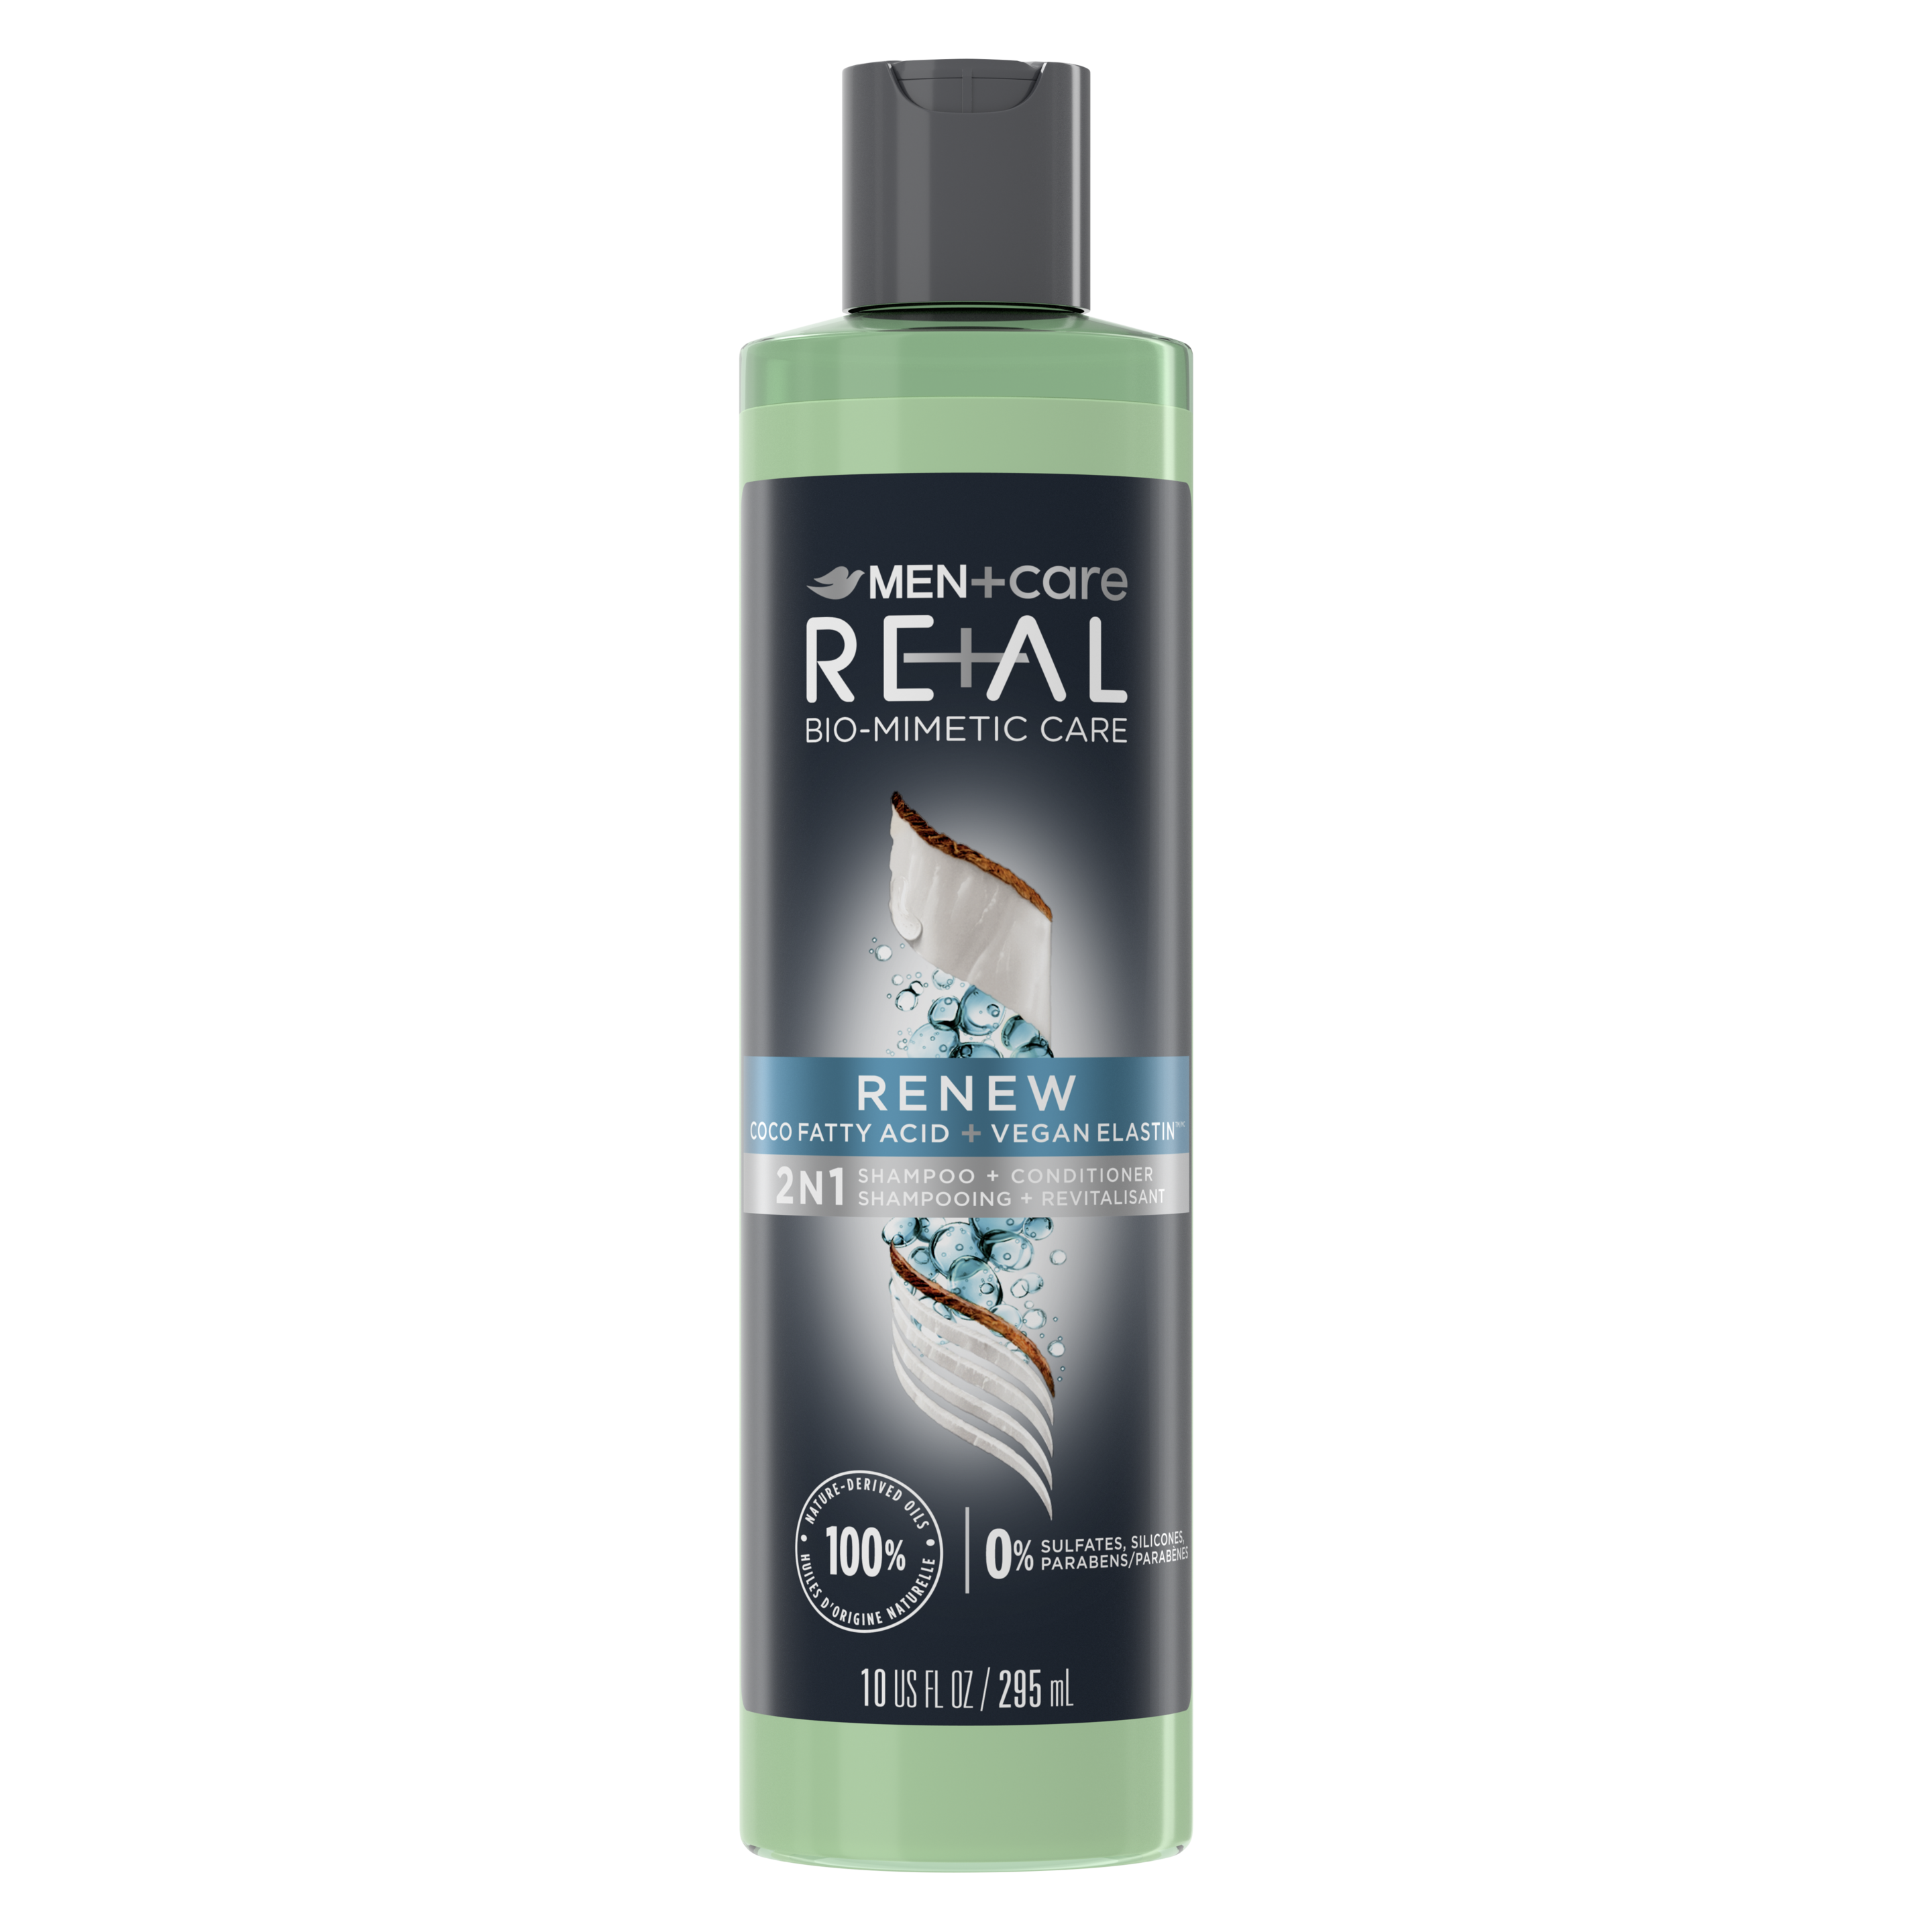 Dove Men+Care RE+AL Bio-Mimetic Renew 2-in-1 Shampoo + Conditioner